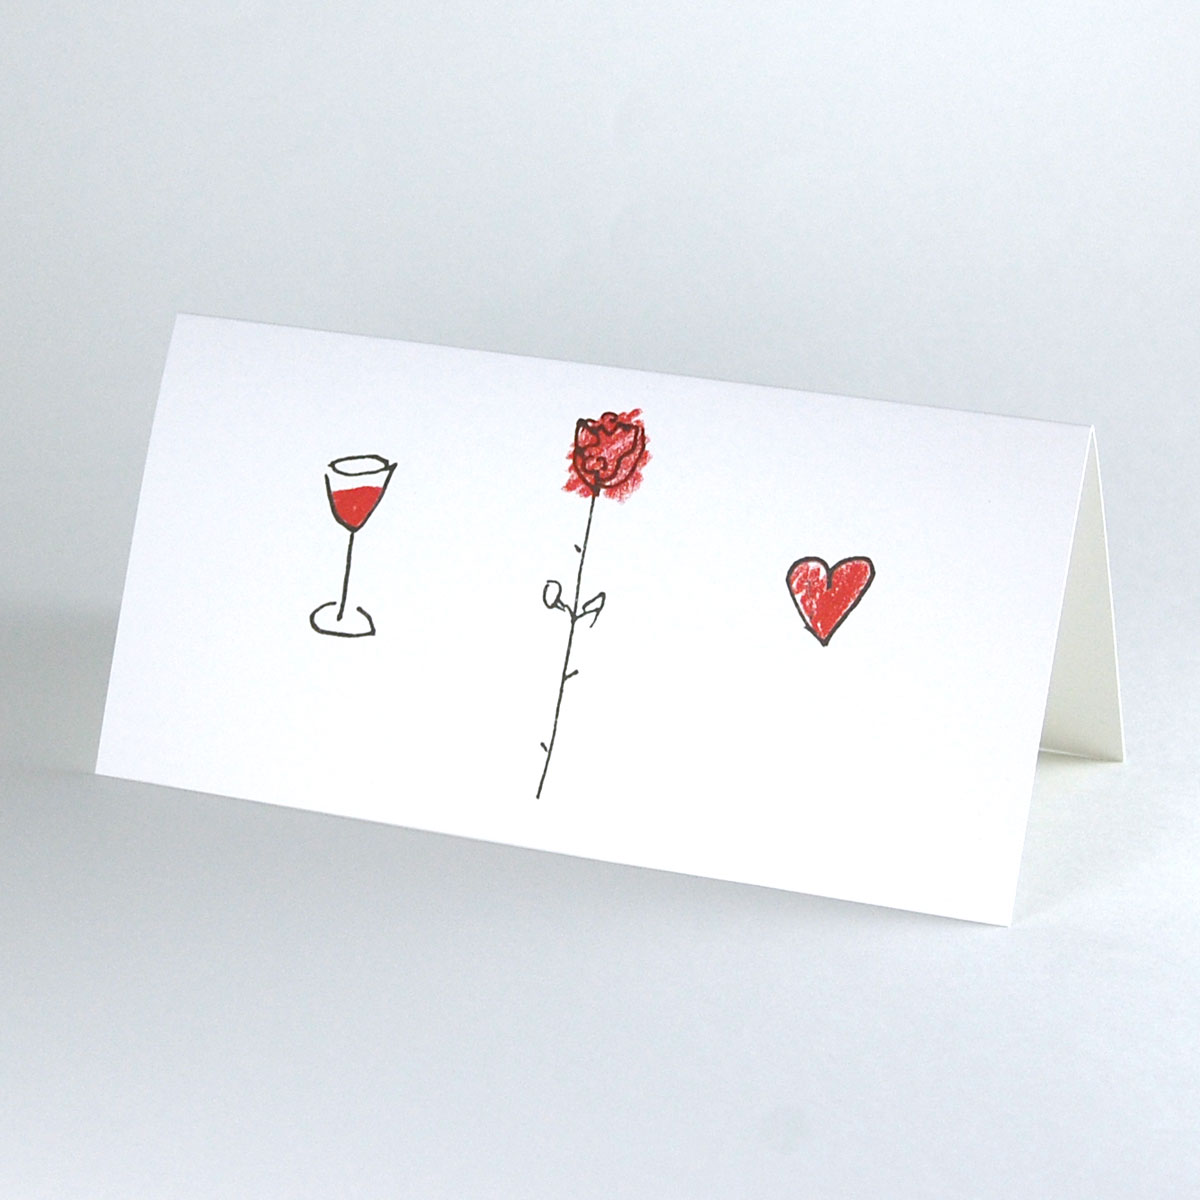 schlichte, edle Einladungskarten für die Hochzeit: Rose, Wein, Herz